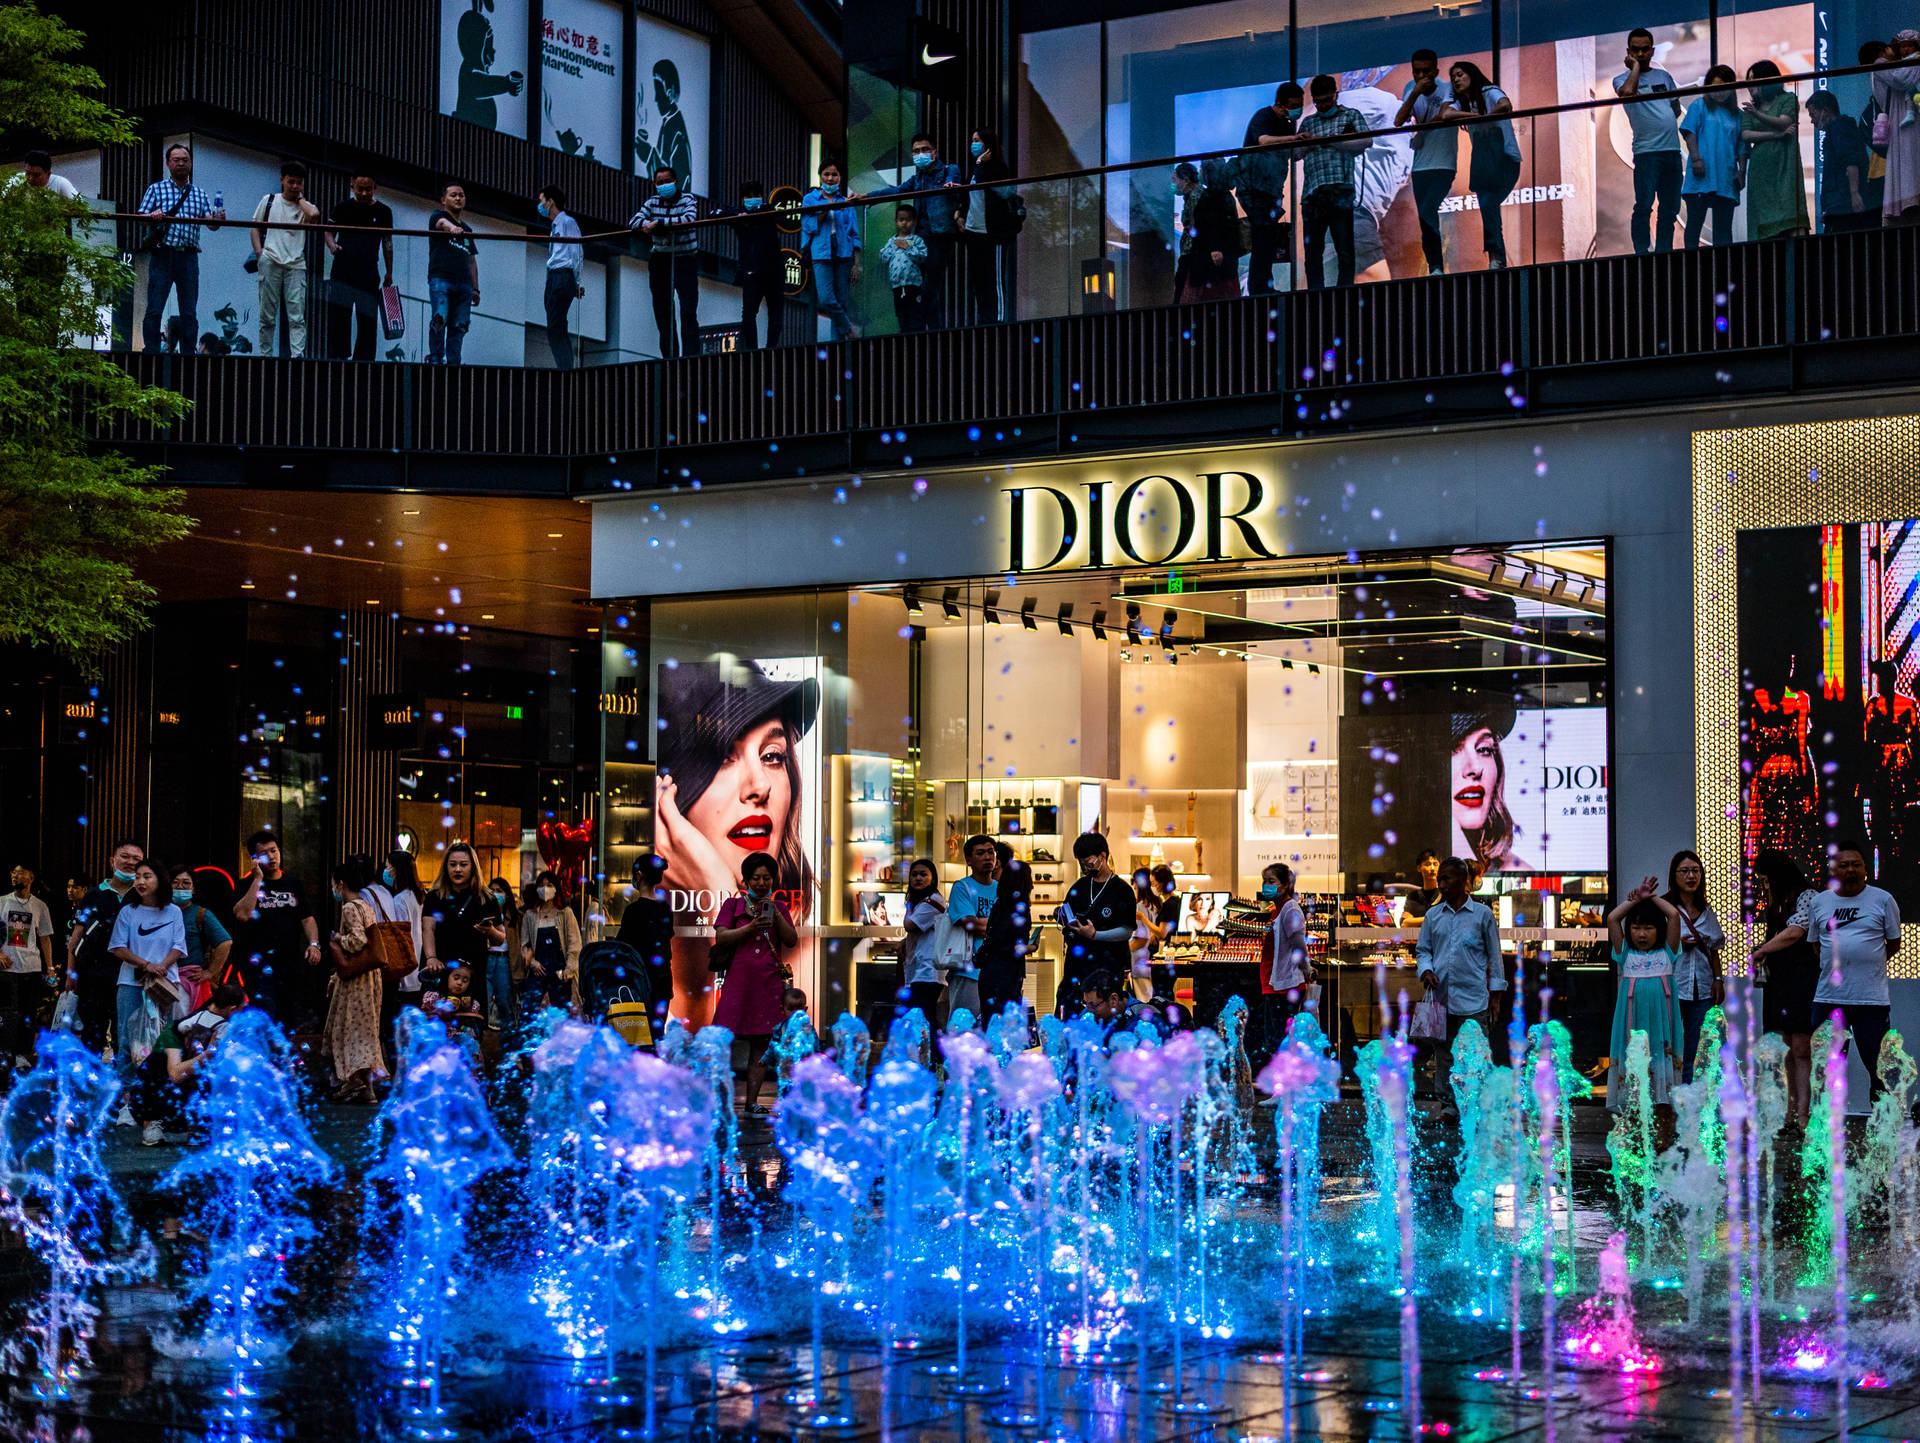 Dior Store Mall Fountain Wallpaper